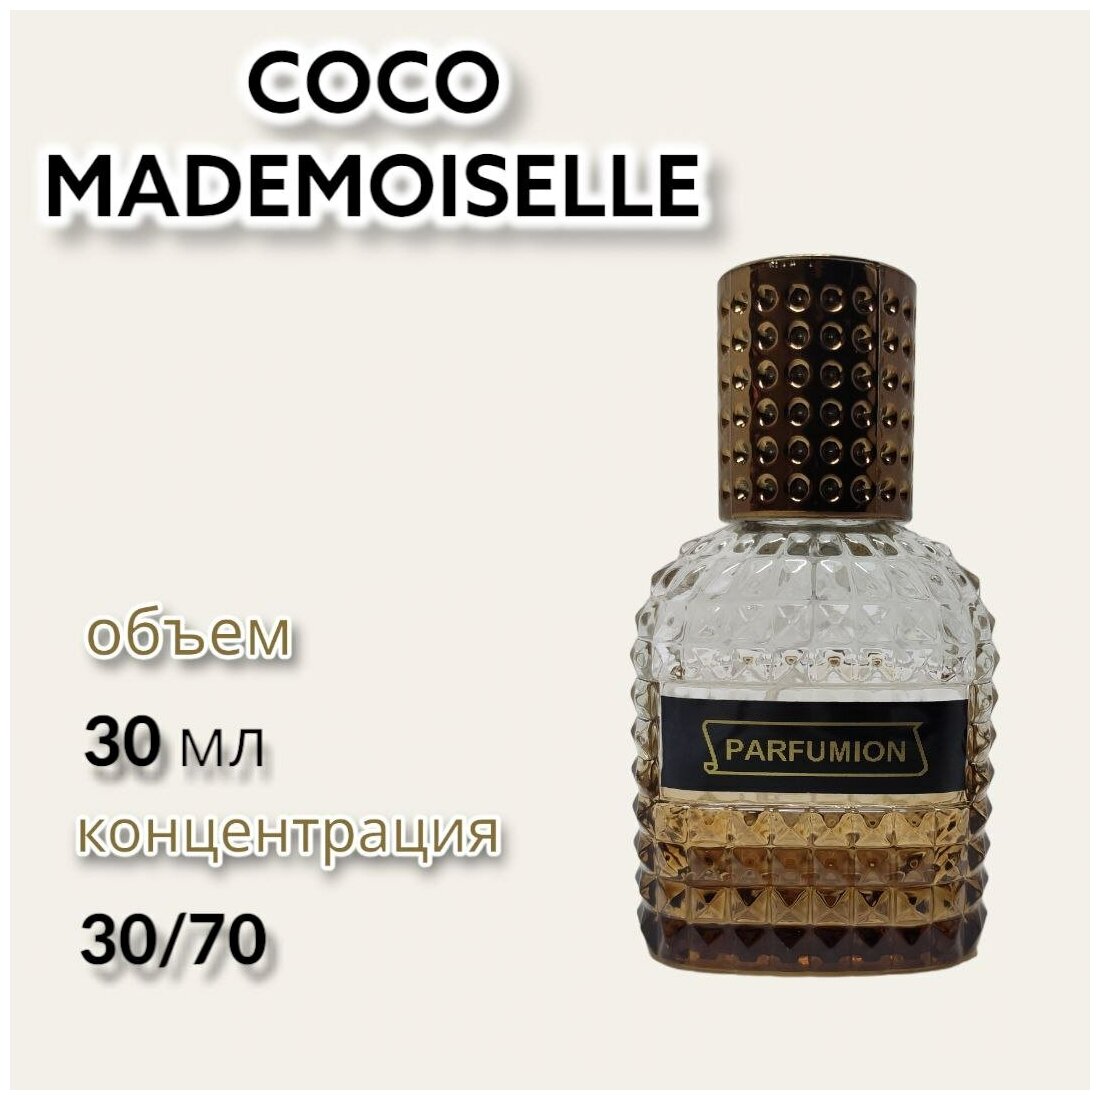 Духи "Coco Mademoiselle" от Parfumion